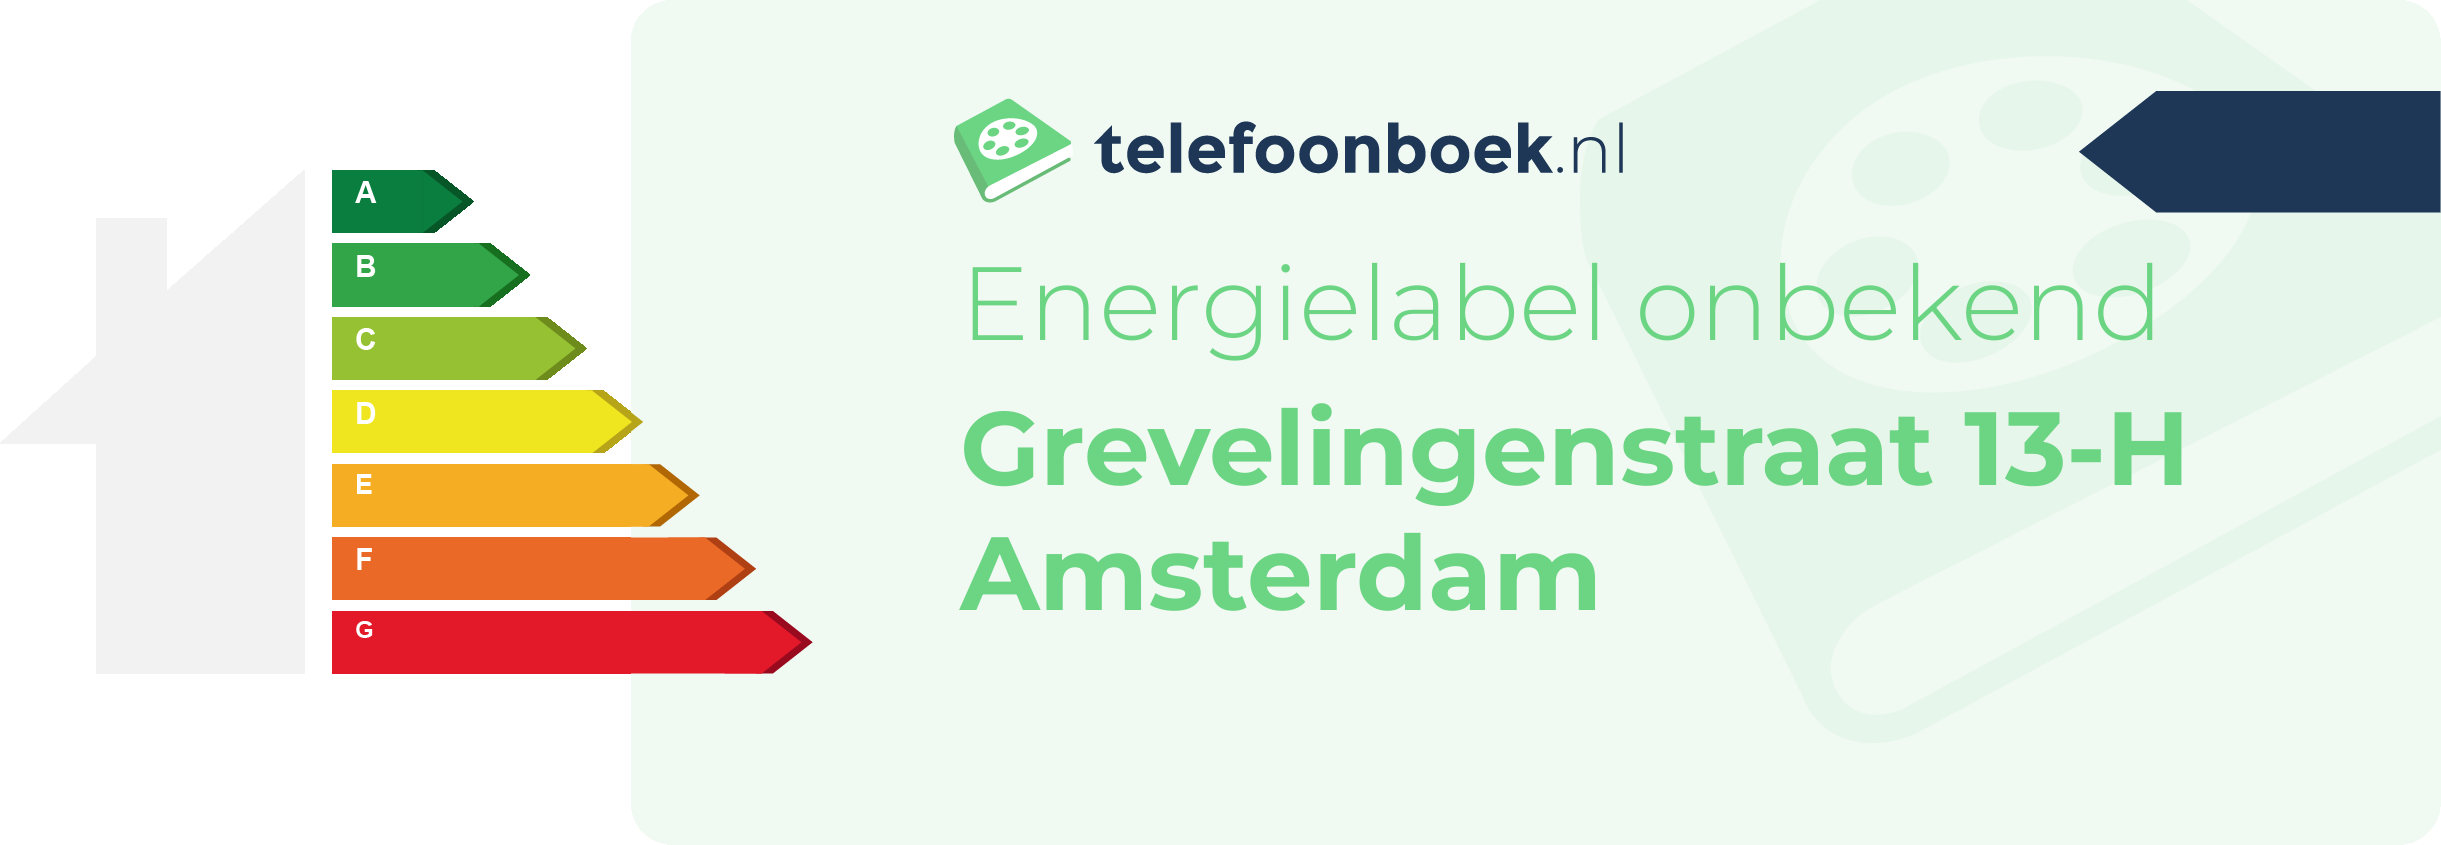 Energielabel Grevelingenstraat 13-H Amsterdam